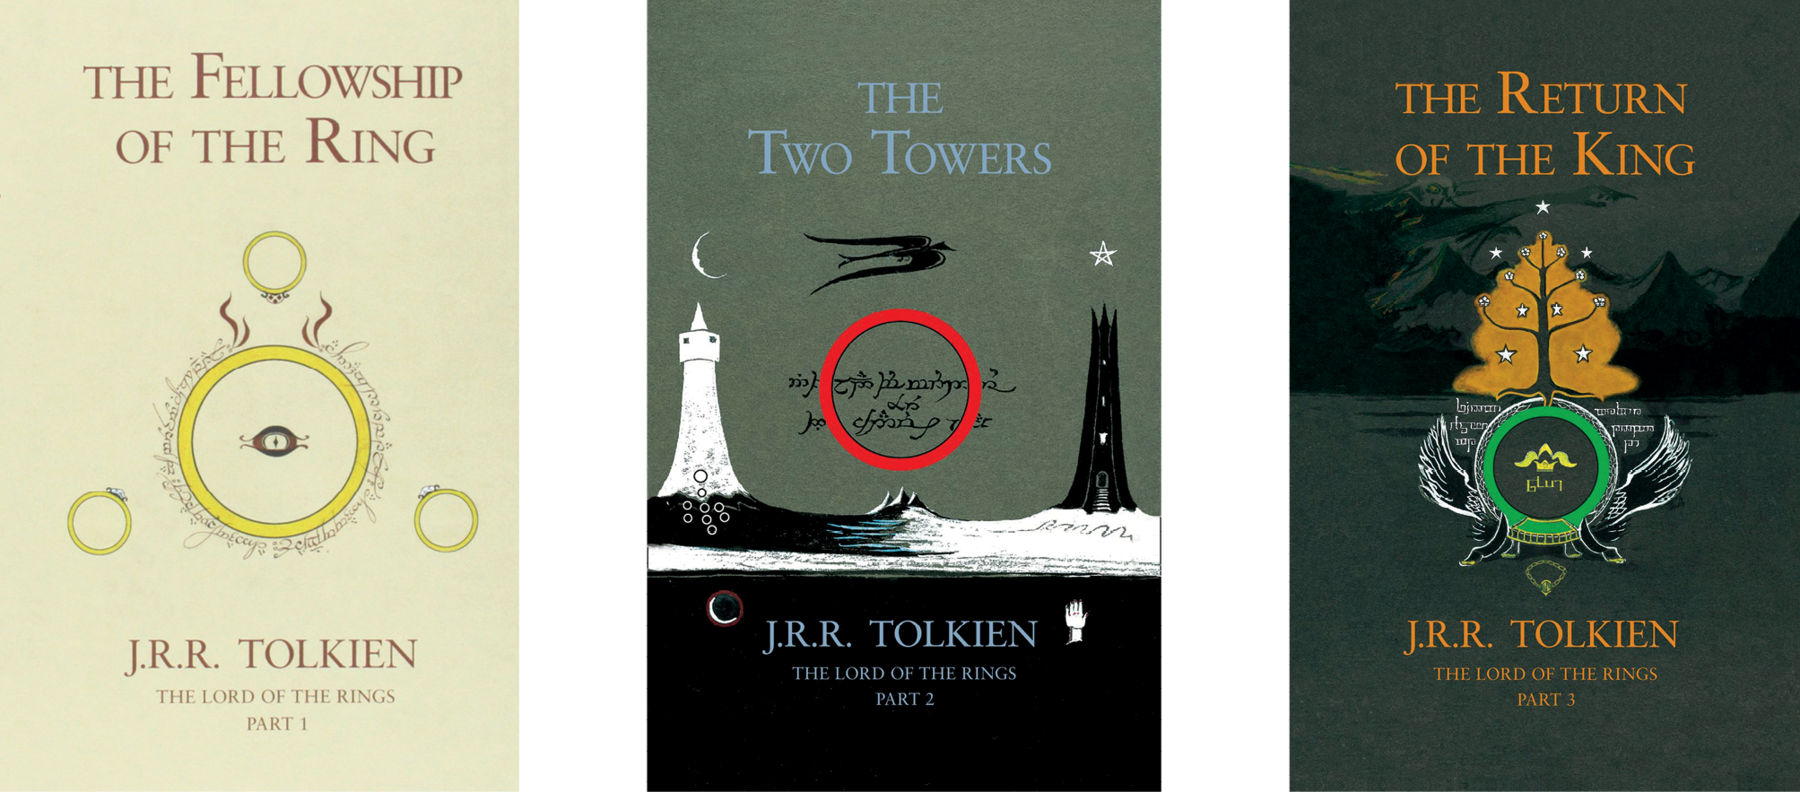 Fotografia. Capas de três livros, da esquerda para a direita:  Livro 1:  Na parte superior, o título do livro: THE FELLOWSHIP OF THE RING. No centro, ilustração de um olho dentro de um anel. Ao redor, há três anéis. Na parte inferior, o nome do autor: J.R.R. TOLKIEN e o subtítulo do livro: THE LORD OF THE RINGS - PART 1.

Livro 2: Na parte superior, o título do livro: THE TWO TOWERS. No centro, ilustração, à esquerda, de uma torre branca, sobre a torre está a lua crescente. À direita, há uma torre preta, sobre a torre está uma estrela. Entre as torres, há um anel vermelho, acima dele está um pássaro. Sob as torres está o mar. Na parte inferior, há o nome do autor: J.R.R. TOLKIEN e o subtítulo do livro: THE LORD OF THE RINGS - PART 2.

Livro 3: Na parte superior, o título do livro: THE RETURN OF THE KING. No centro, ilustração de um anel com asas. Acima, uma árvore de tronco preto e folhas marrom com muitas estrelas brancas; no fundo, montanhas escuras. Na parte inferior, o nome do autor: J.R.R. TOLKIEN e o subtítulo do livro: THE LORD OF THE RINGS - PART 3.